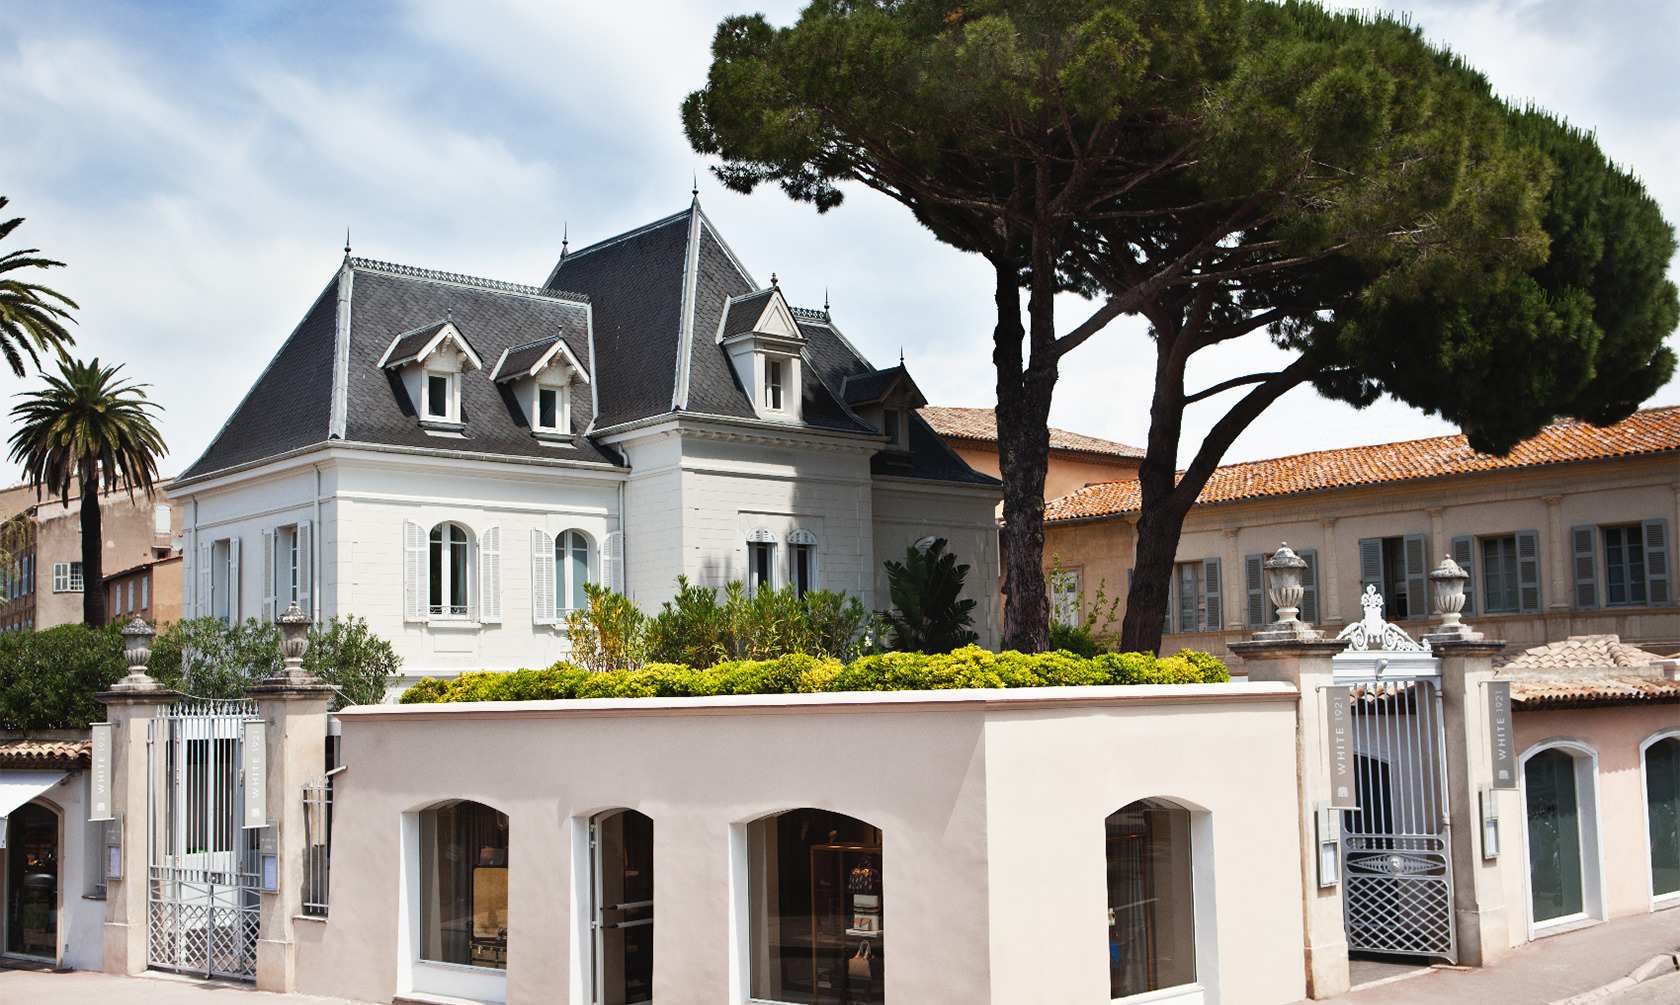 Así es el nuevo diseño y decoración del restaurant de Louis Vuitton en Saint  Tropez – Revista Para Ti